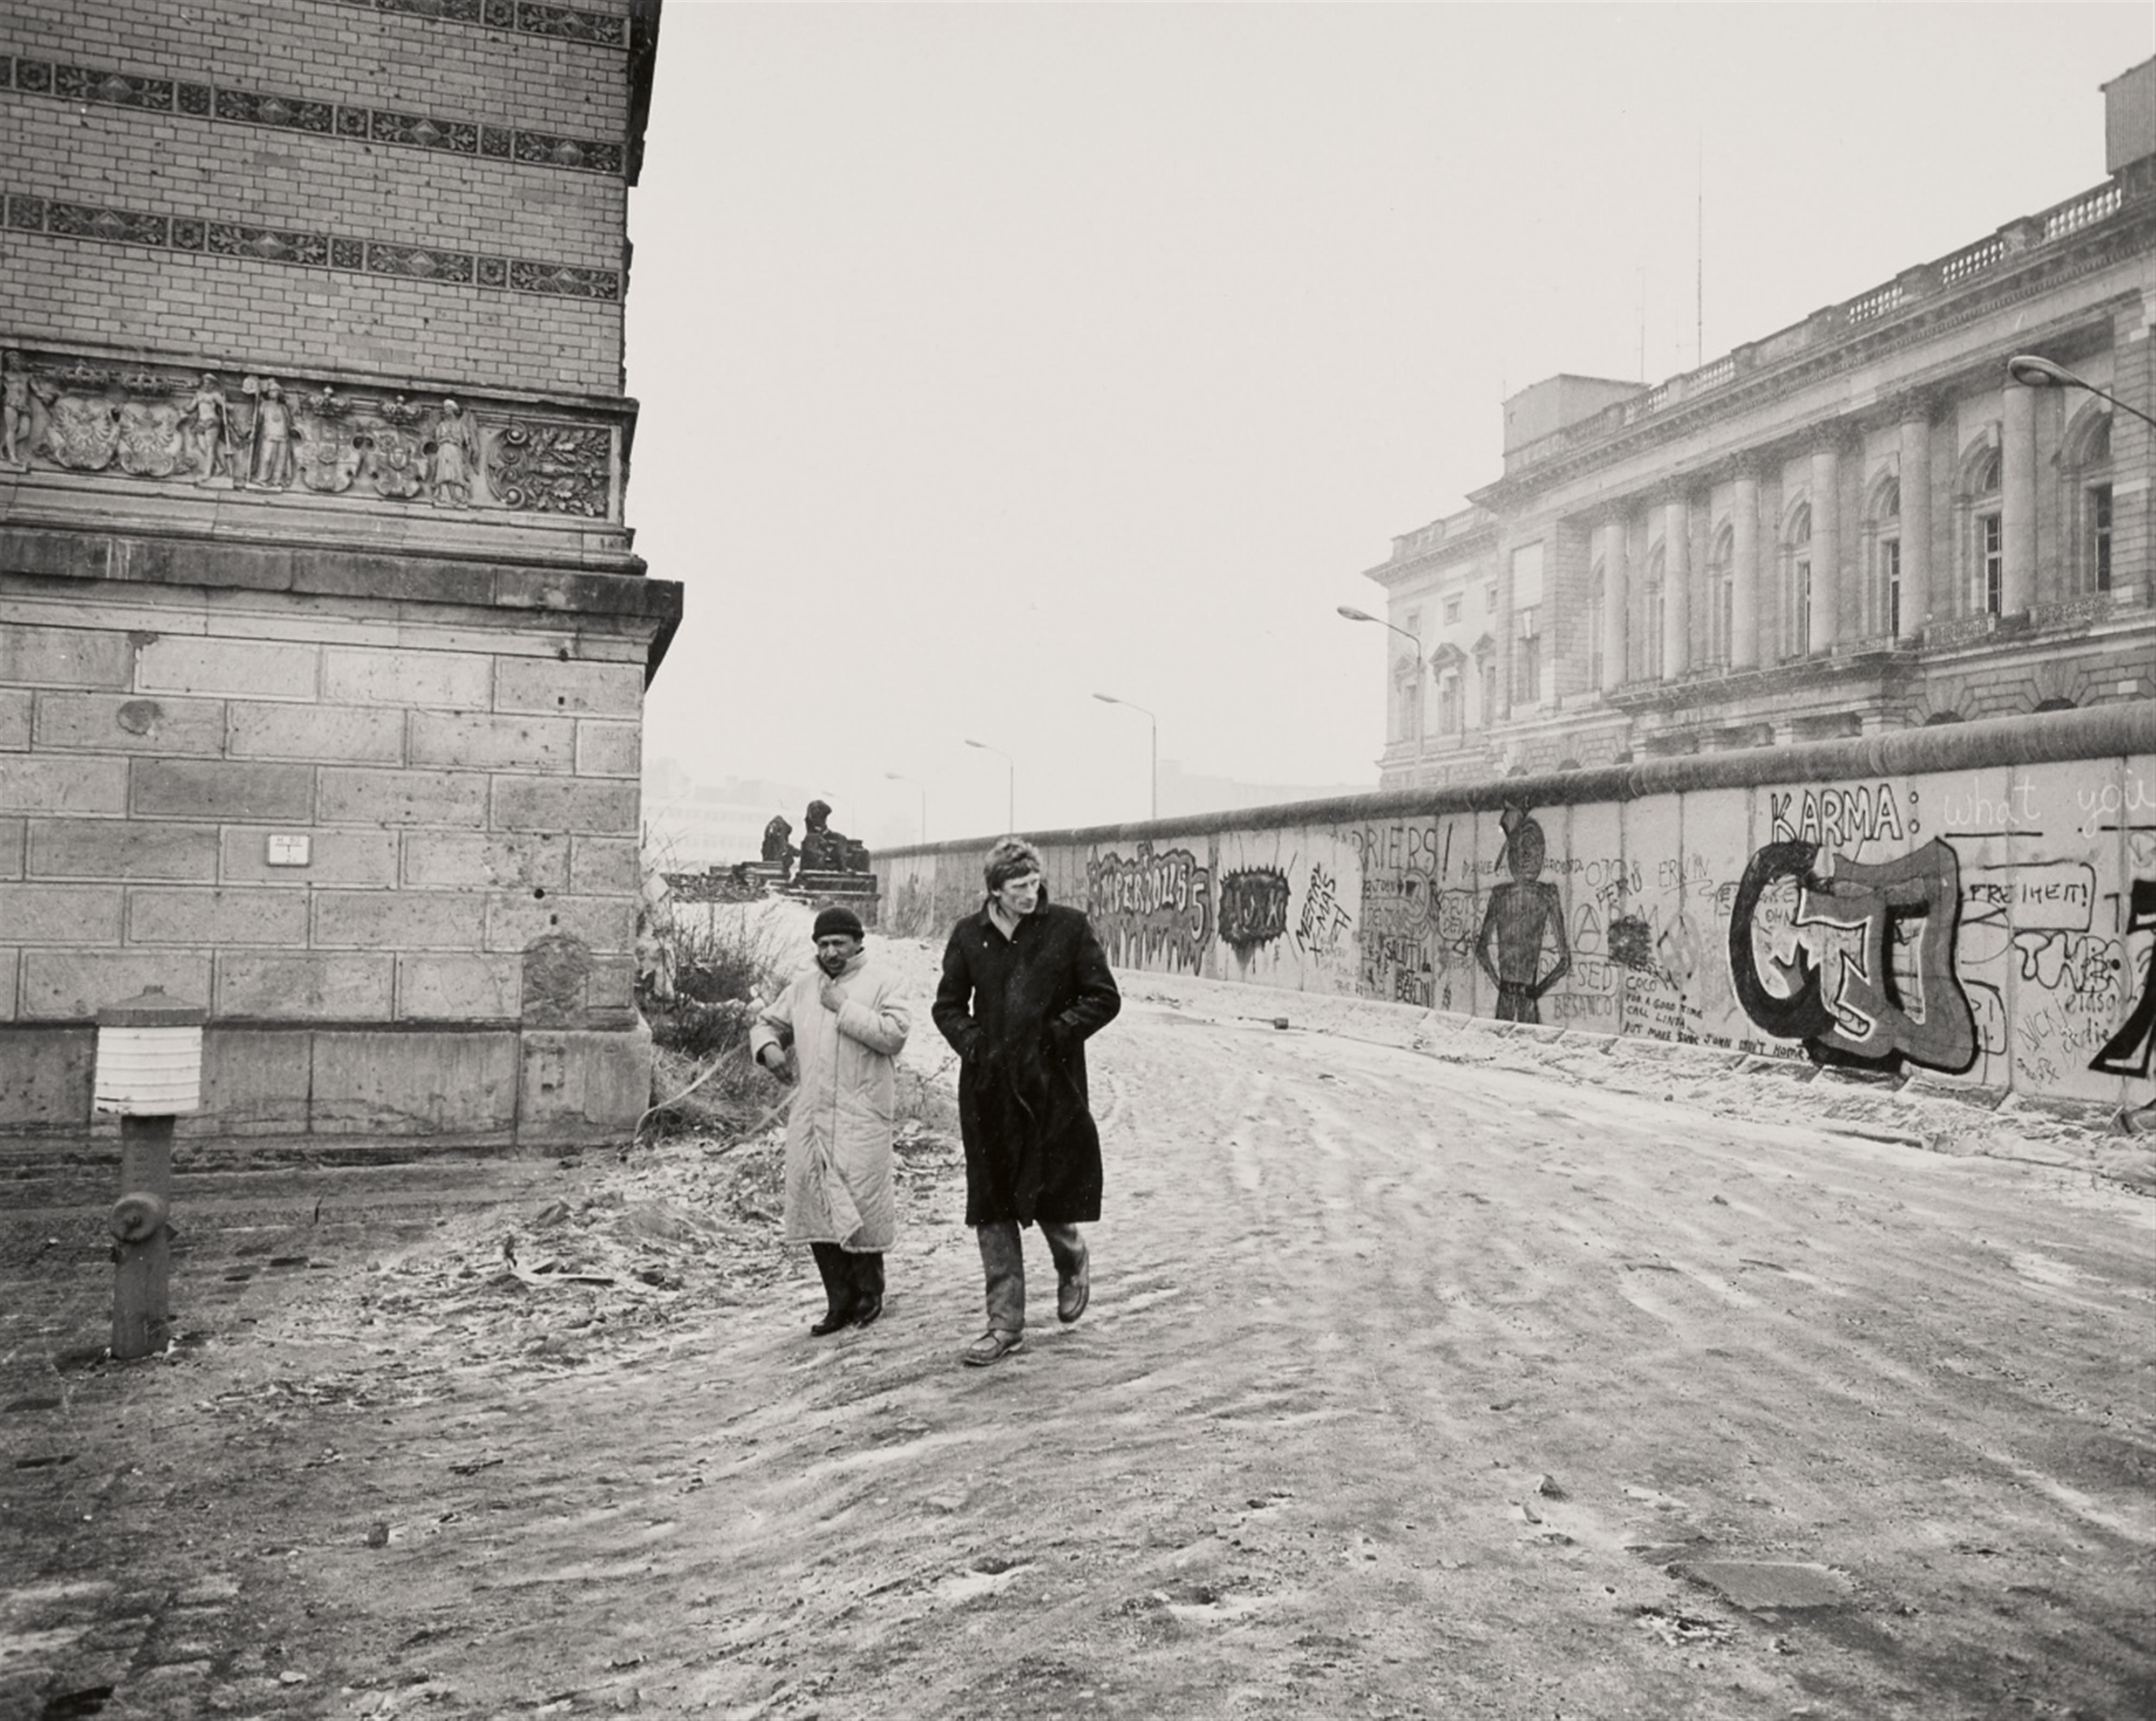 Thomas Lüttge - Mauer im Winter, Berlin. Erich gib doch endlich auf, Berlin - image-2